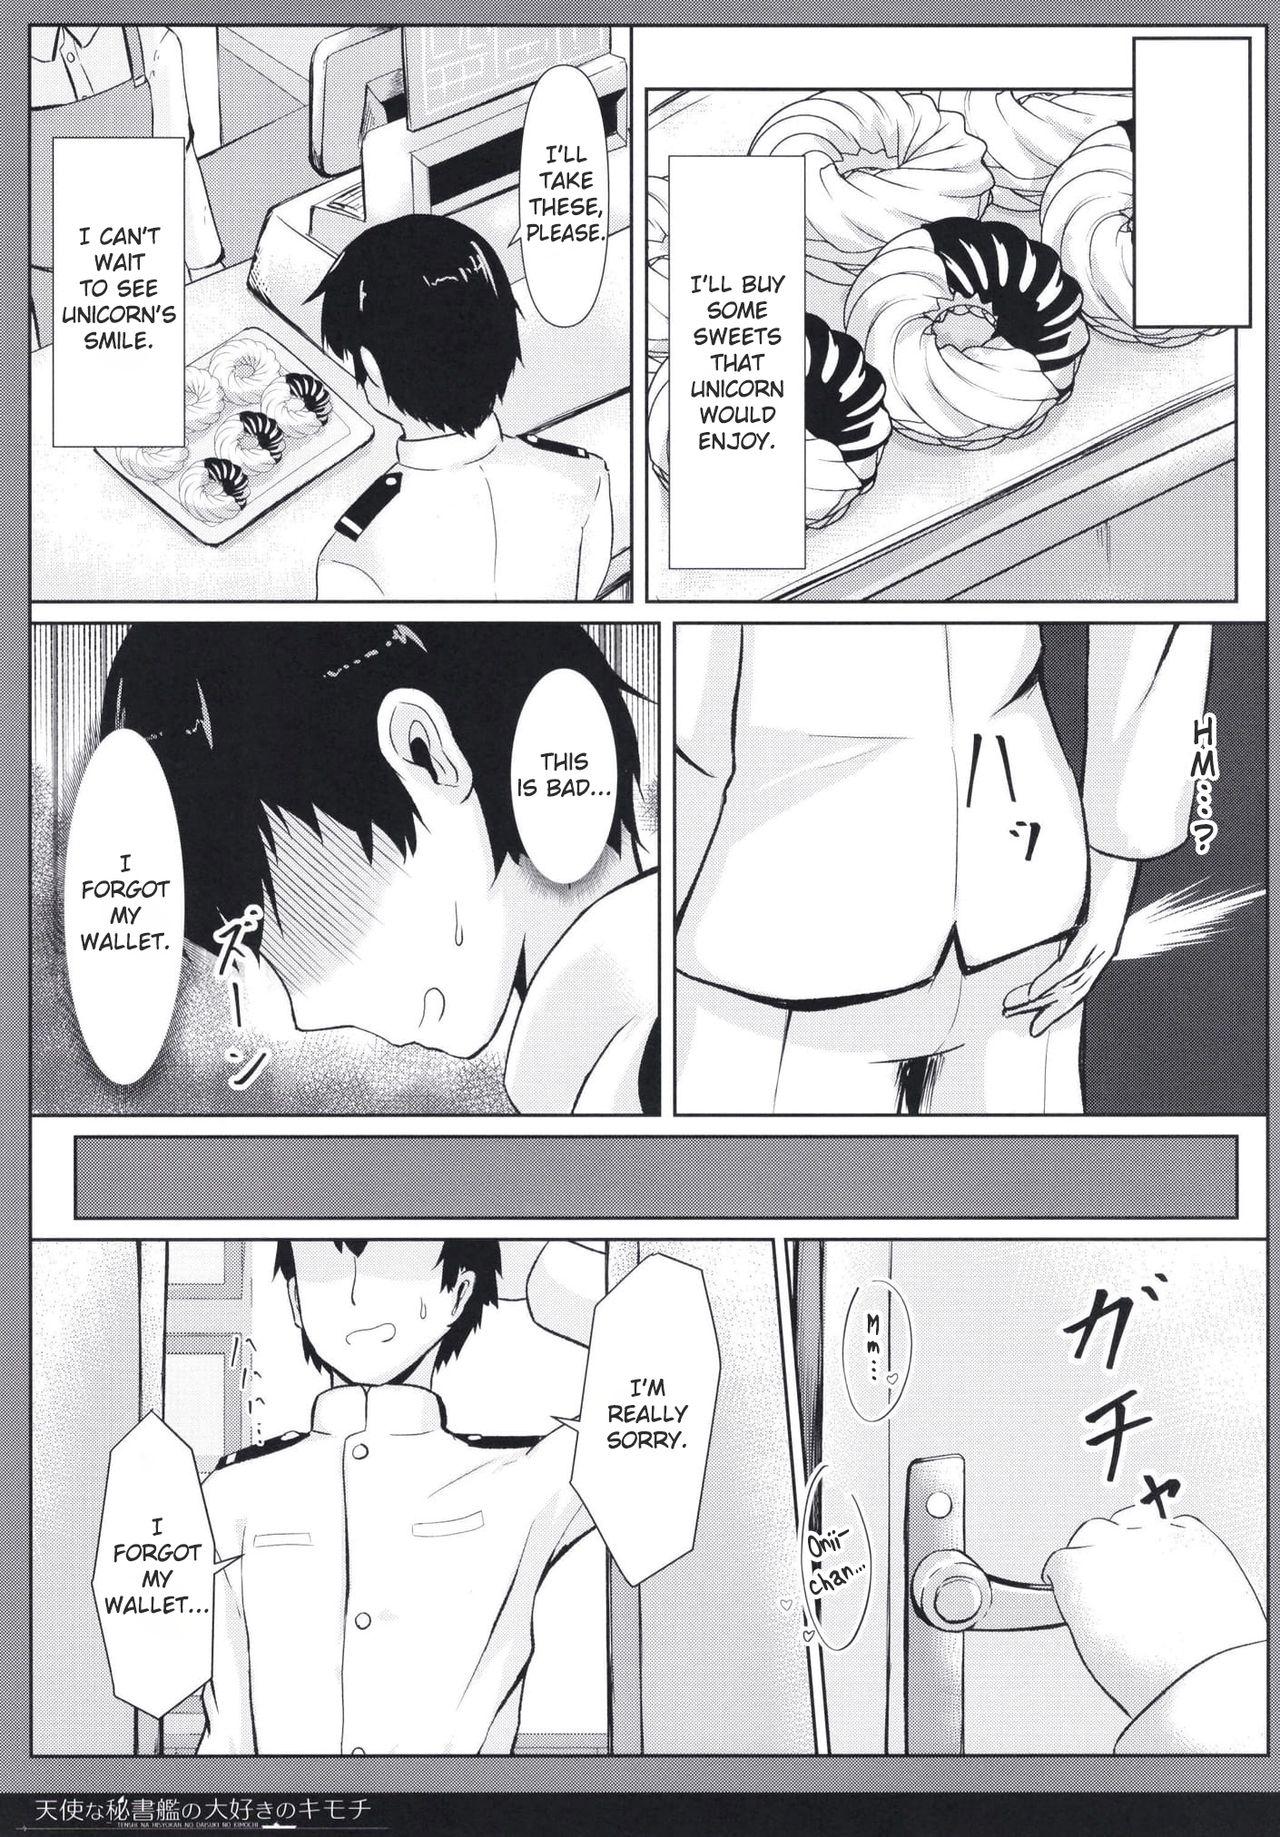 Cheating Wife Tenshi na Hisyokan no Daisuki no Kimochi - Azur lane Gaydudes - Page 7